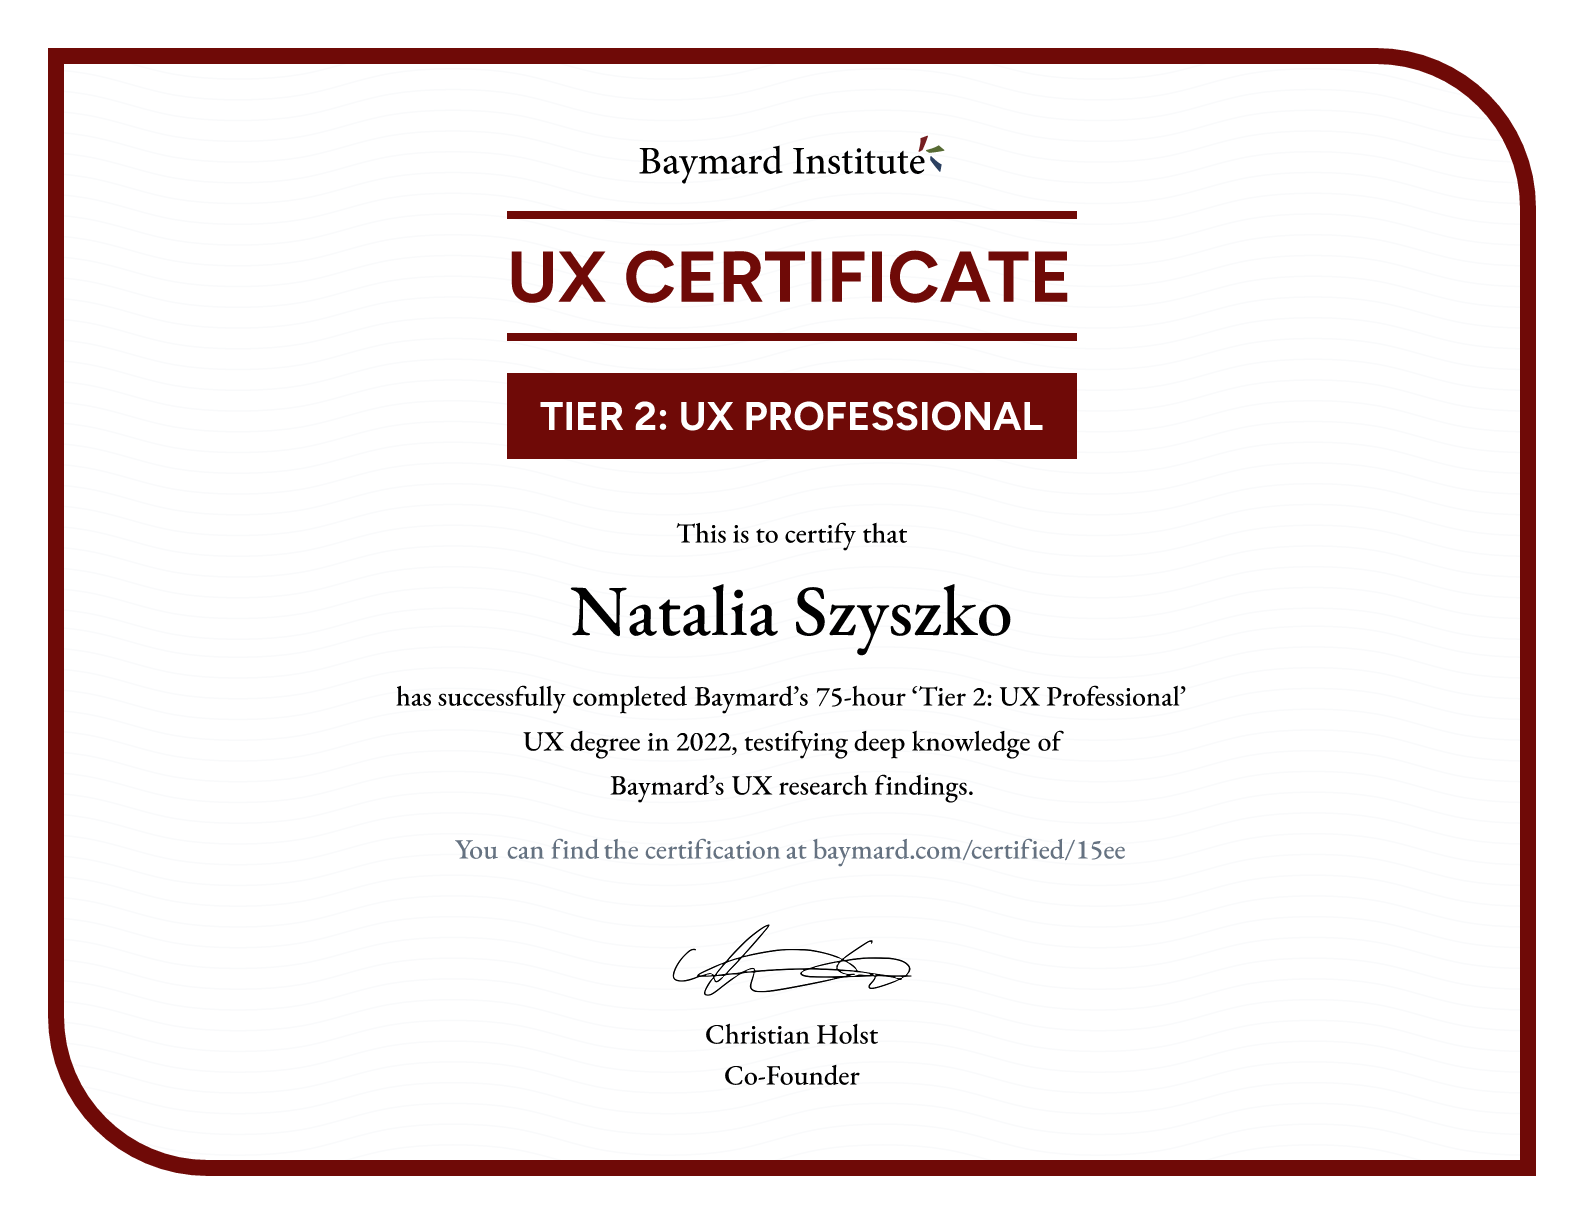 Natalia Szyszko’s certificate